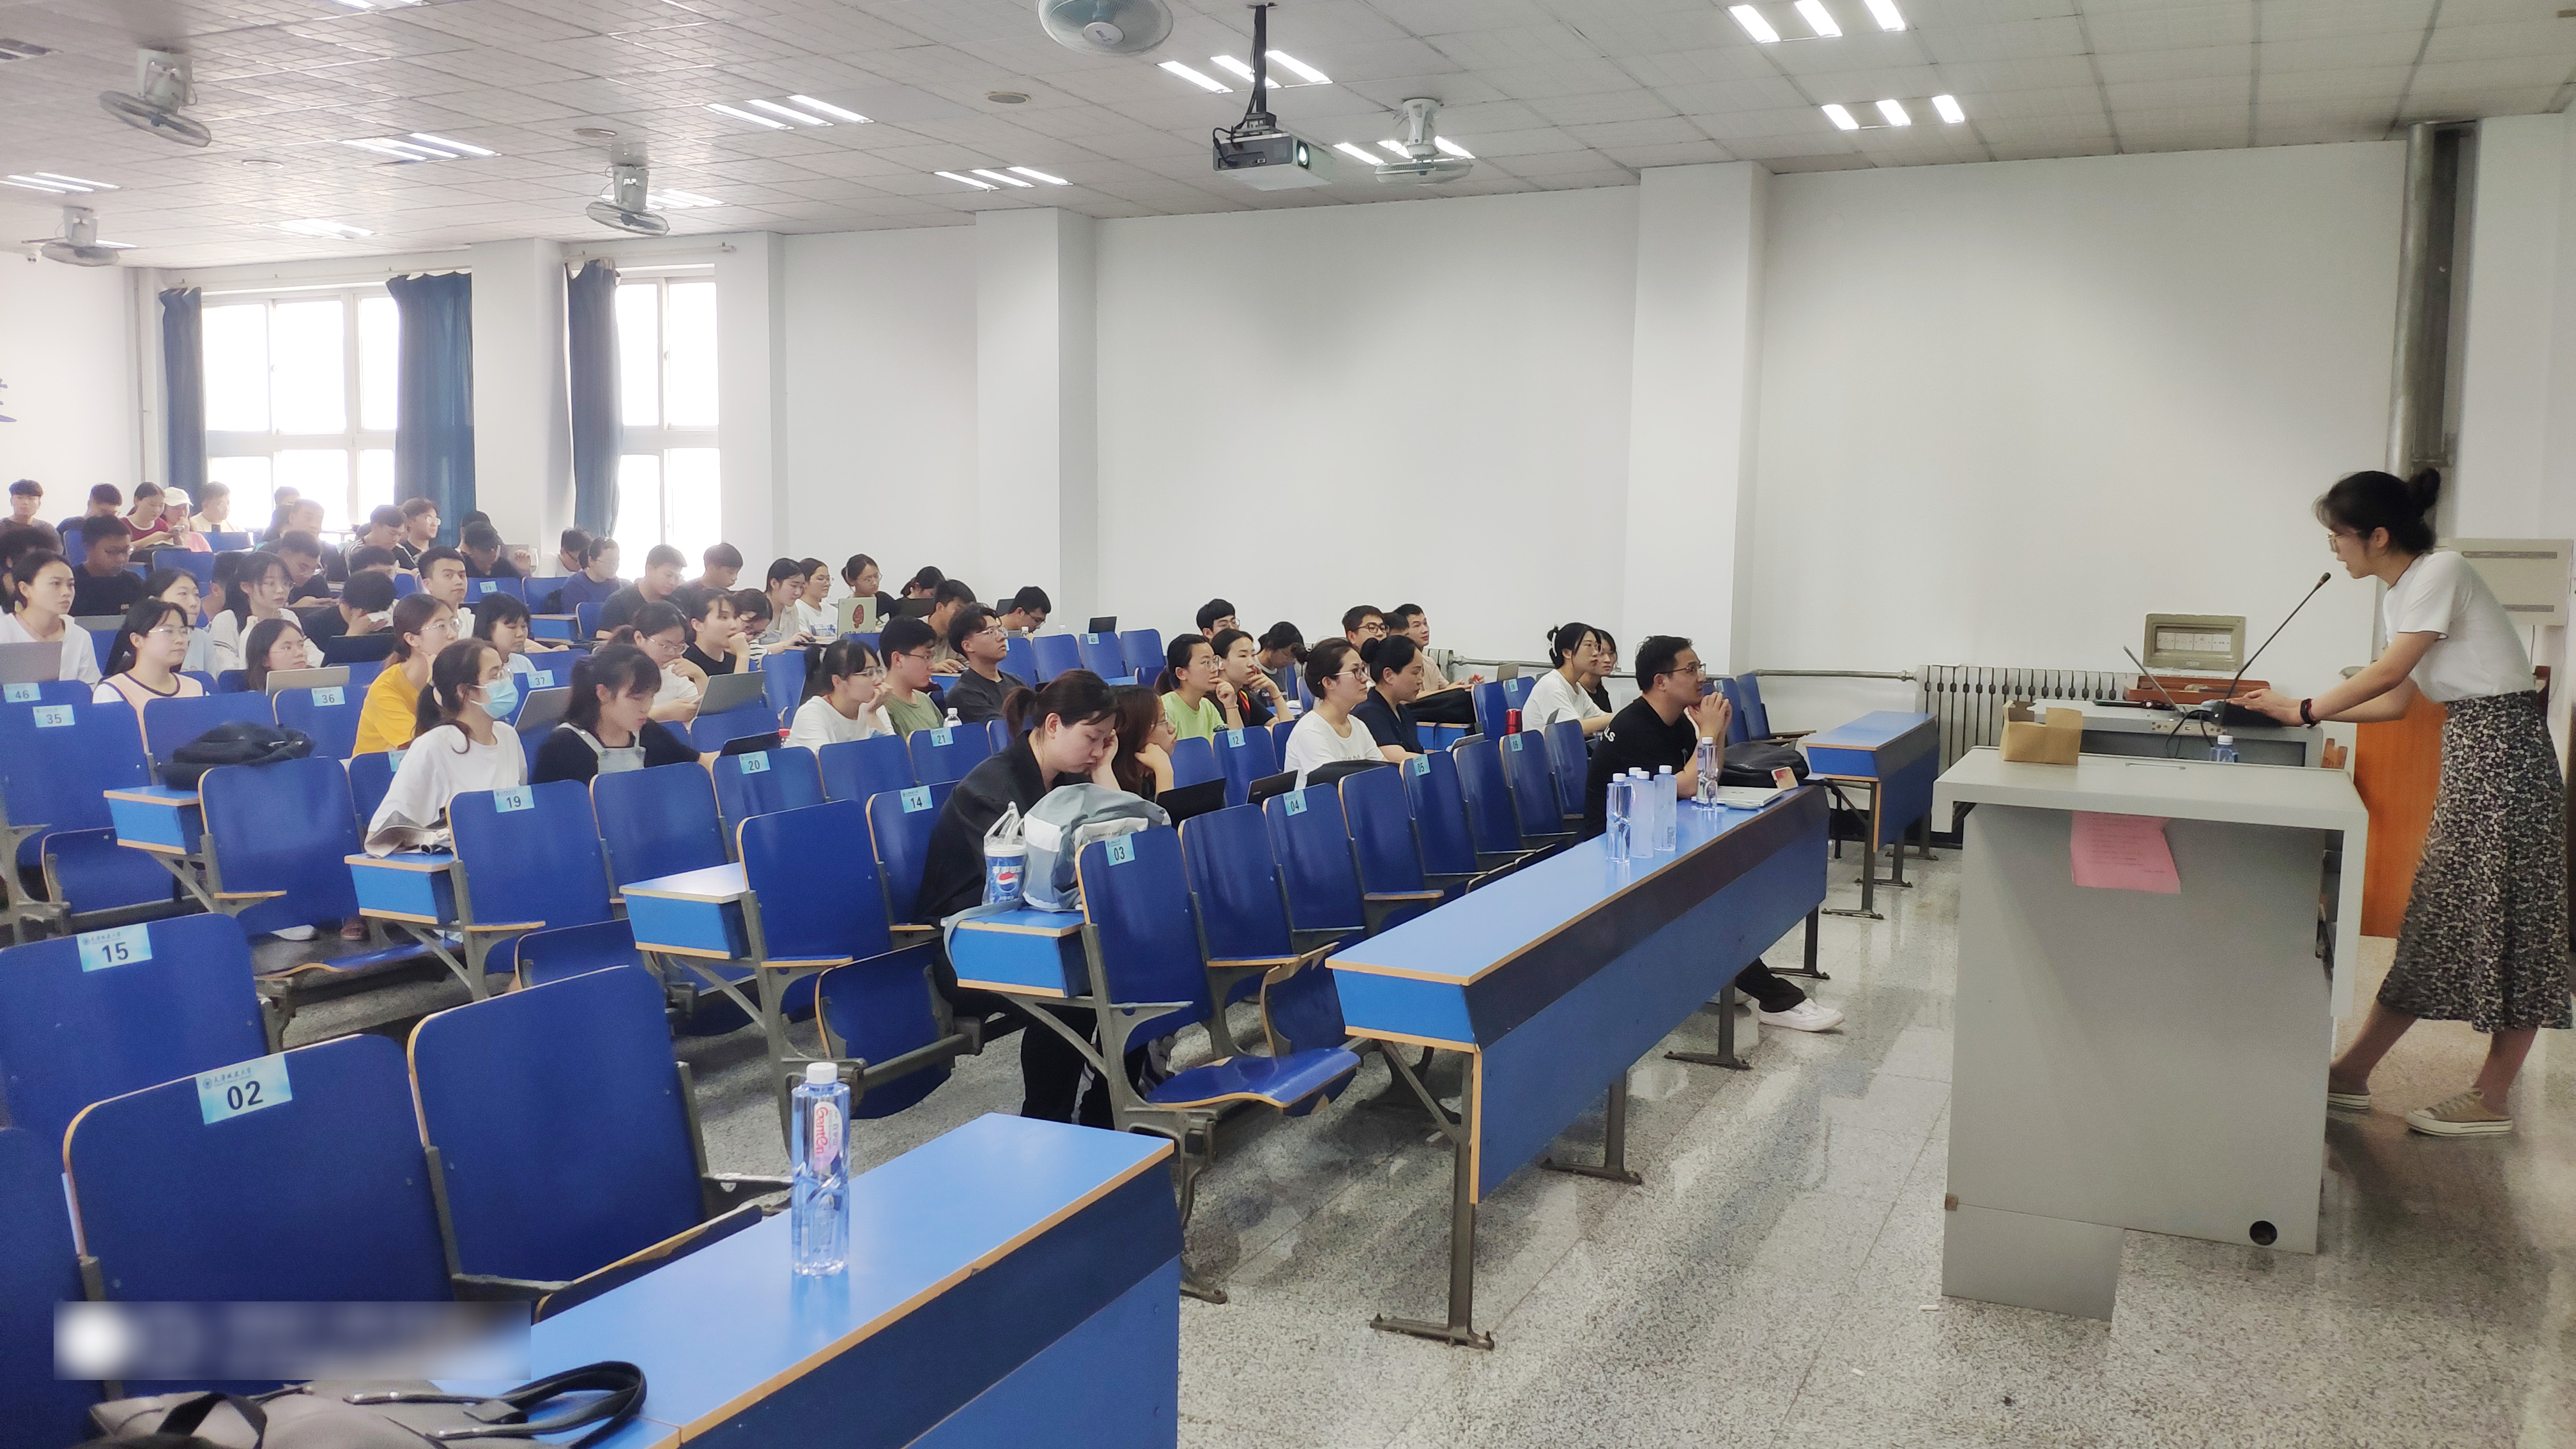 苍穹地理信息平台kqgis走近天津城建大学教学课堂